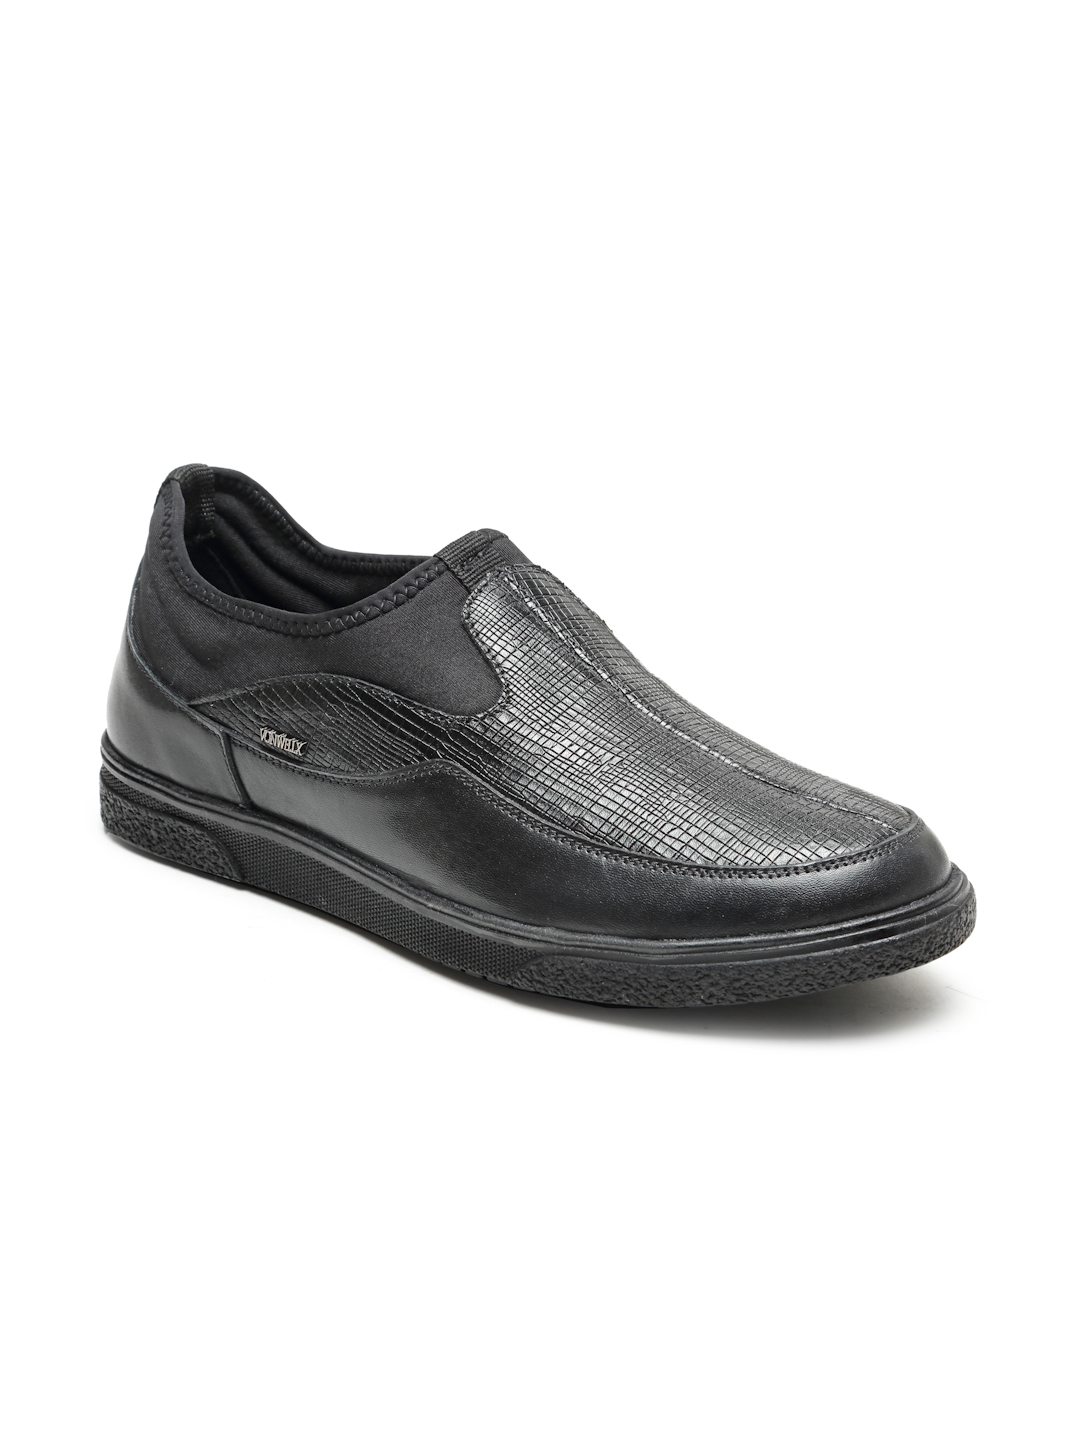 Buy Von Wellx Germany Comfort Men's Black Casual Loafers Everett Online in Rajkot